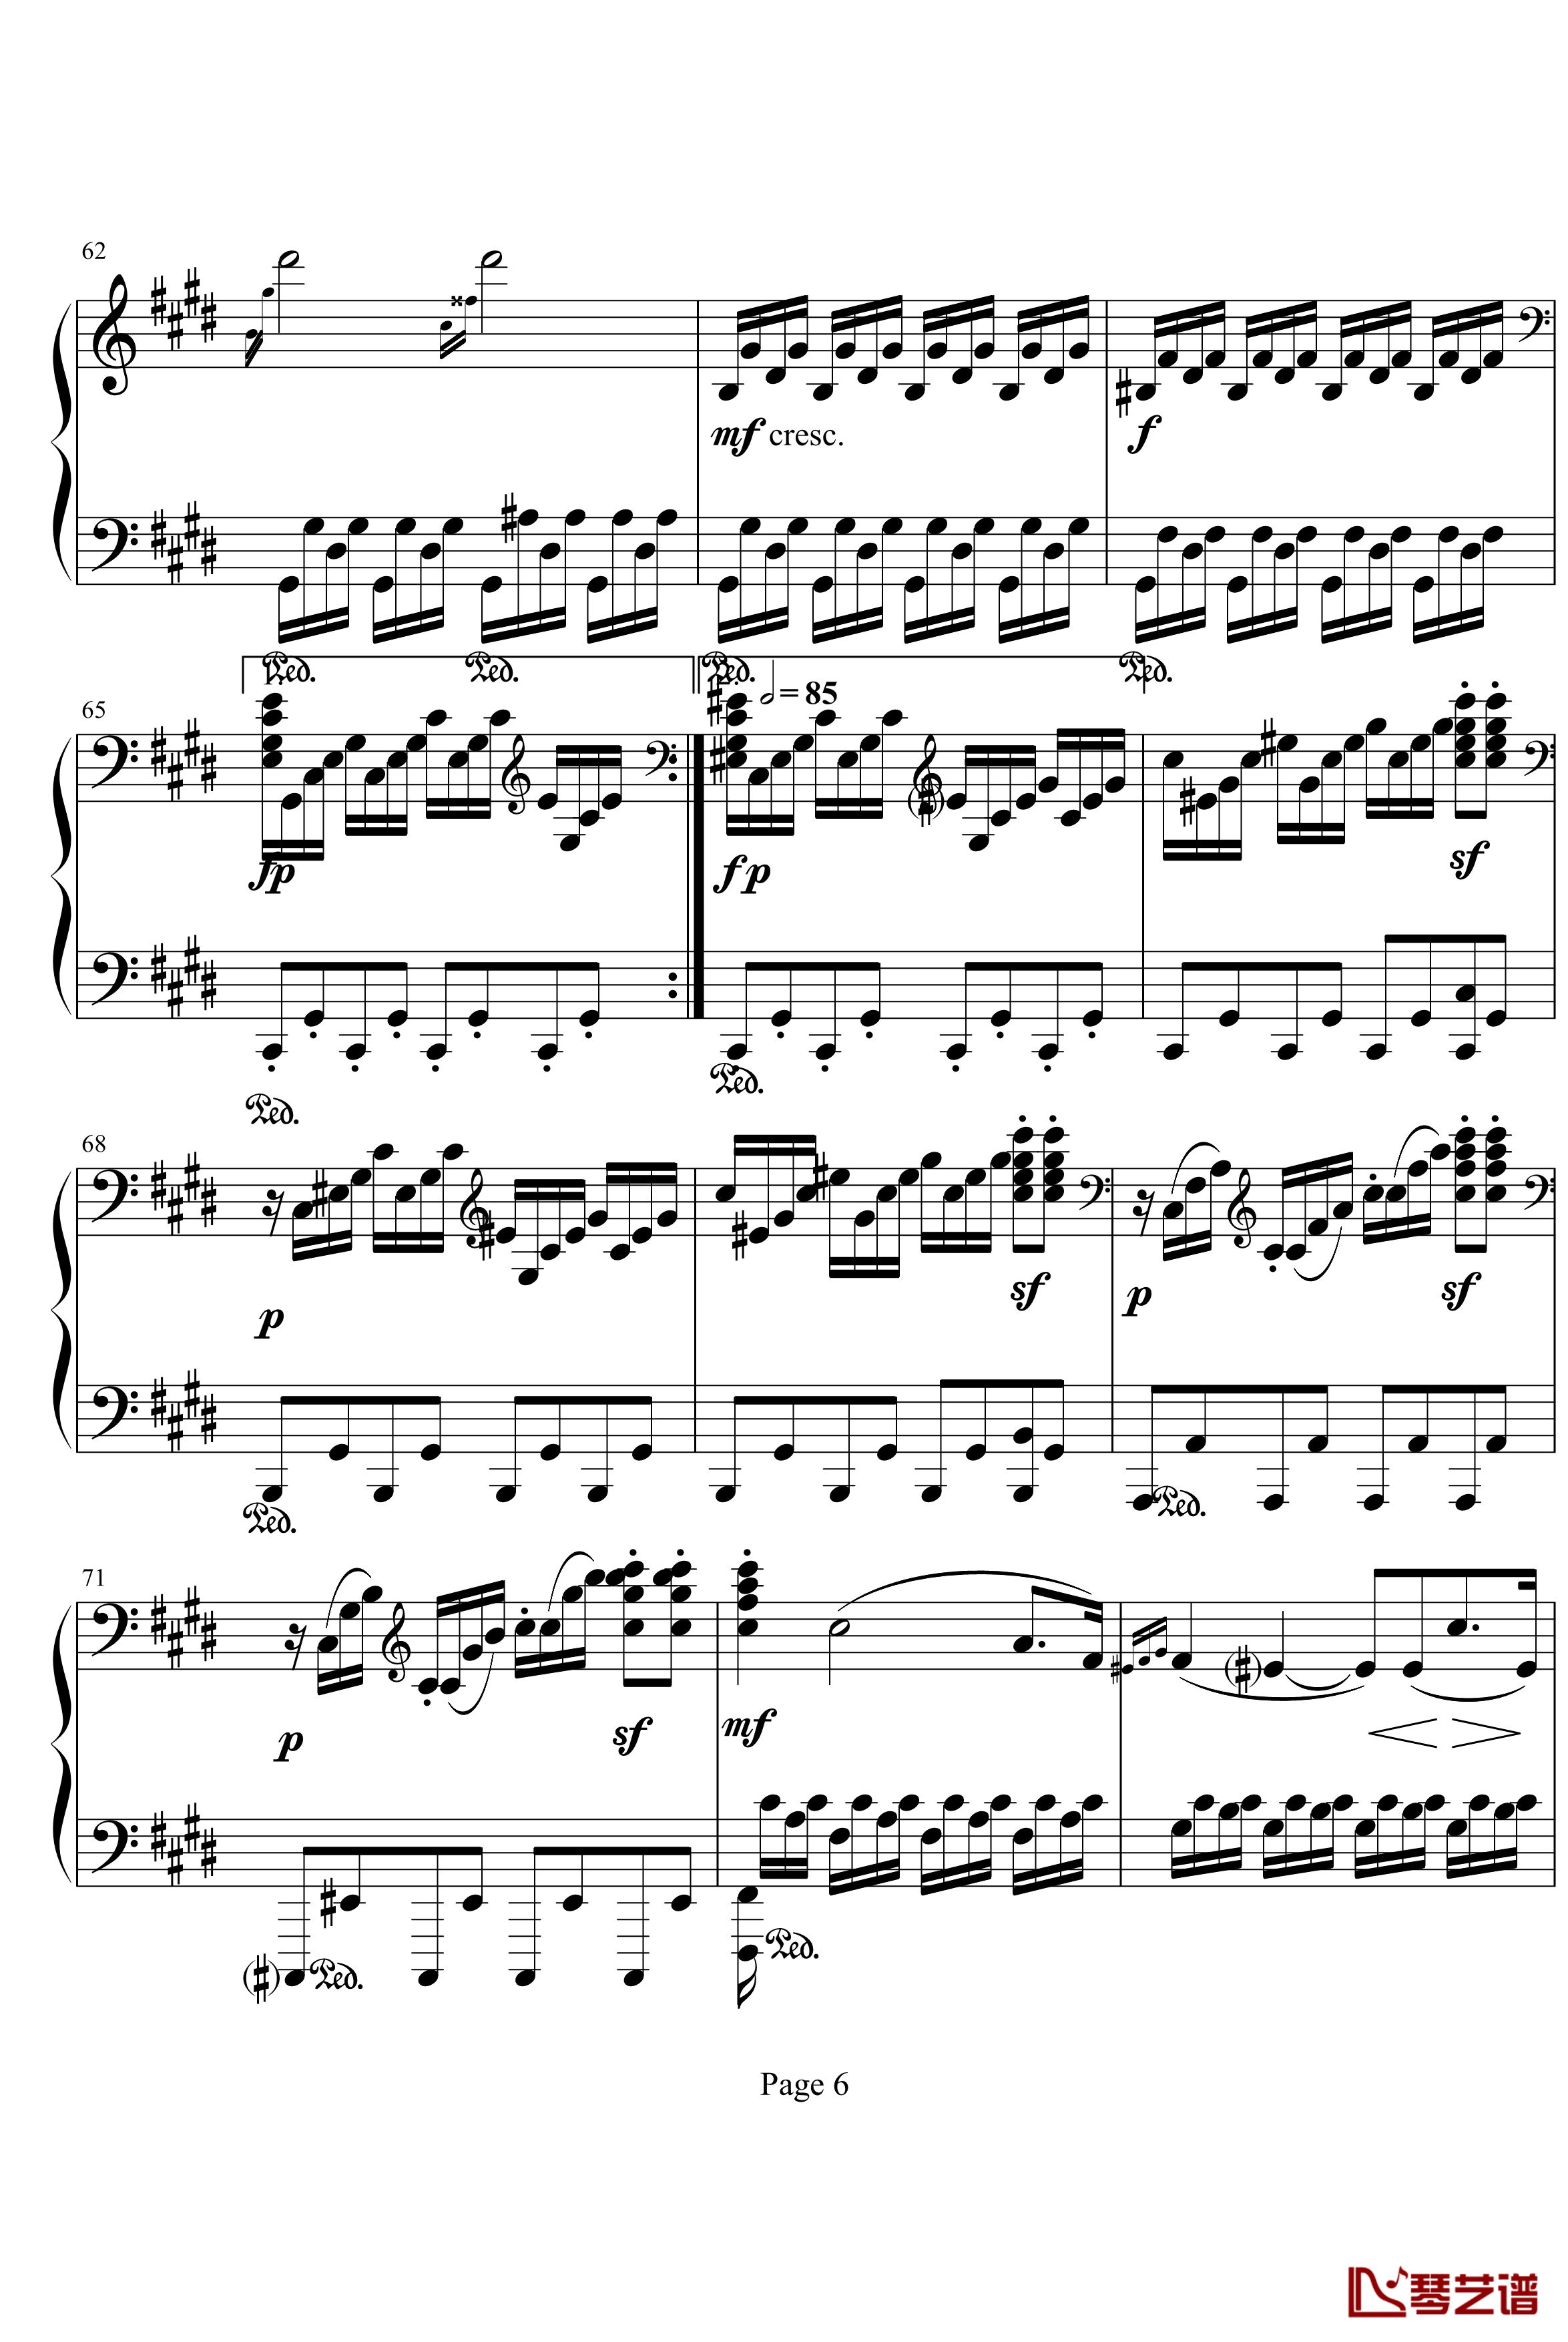 月光奏明曲钢琴谱-作品27之2-贝多芬-beethoven6